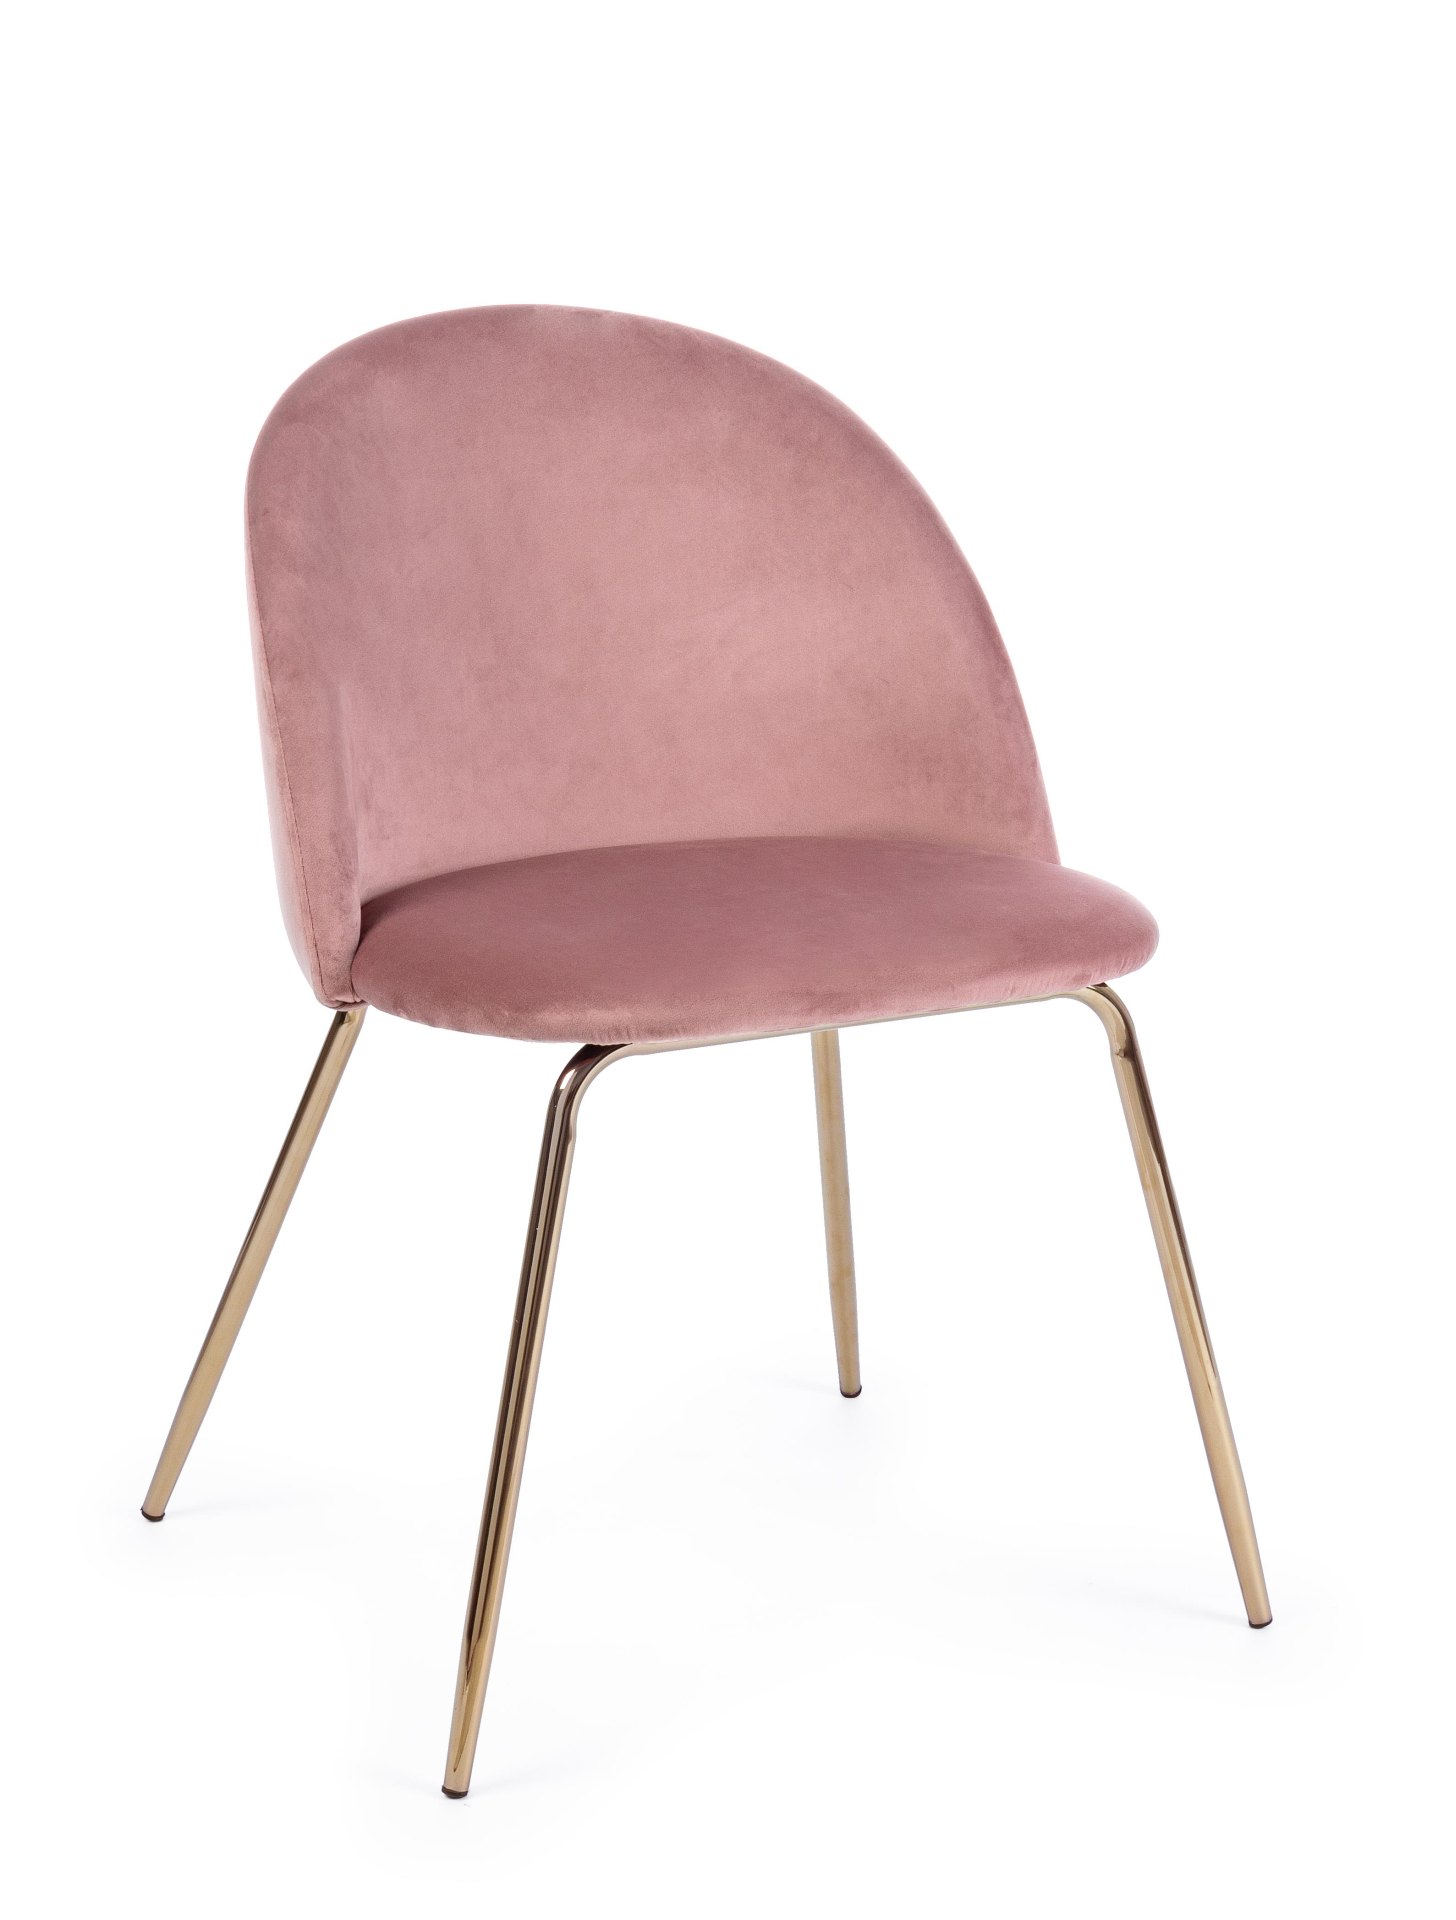 Der Esszimmerstuhl Tanya überzeugt mit seinem modernem Design. Gefertigt wurde der Stuhl aus Samt, welcher einen rosa Farbton besitzt. Das Gestell ist aus Metall und ist Gold. Die Sitzhöhe beträgt 46 cm.